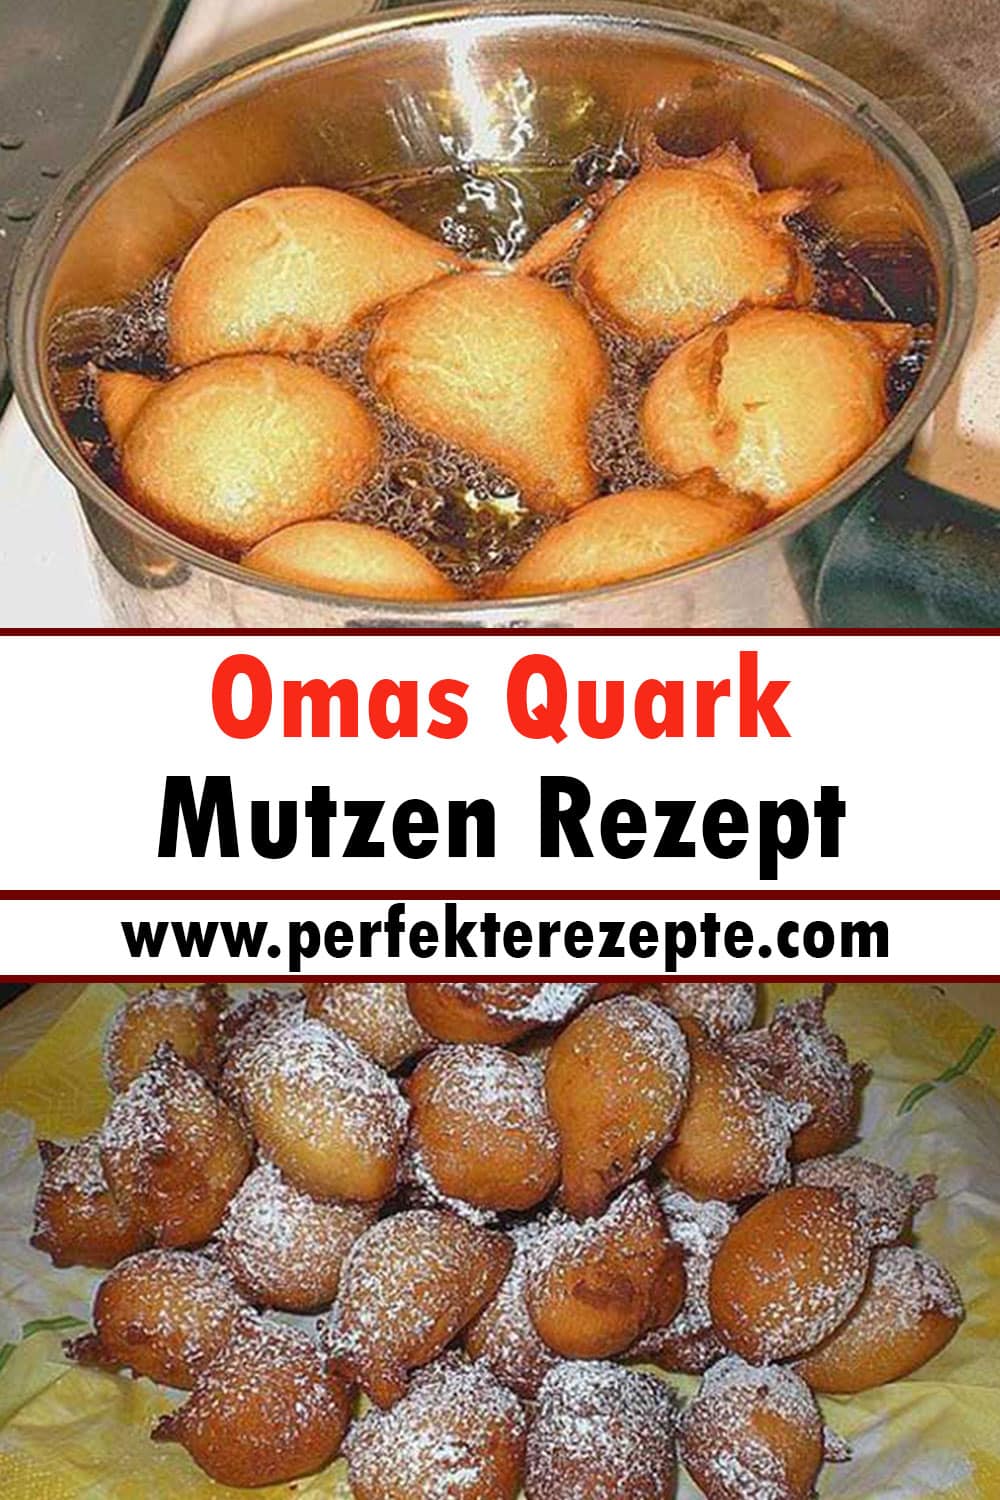 Omas Quark Mutzen Rezept